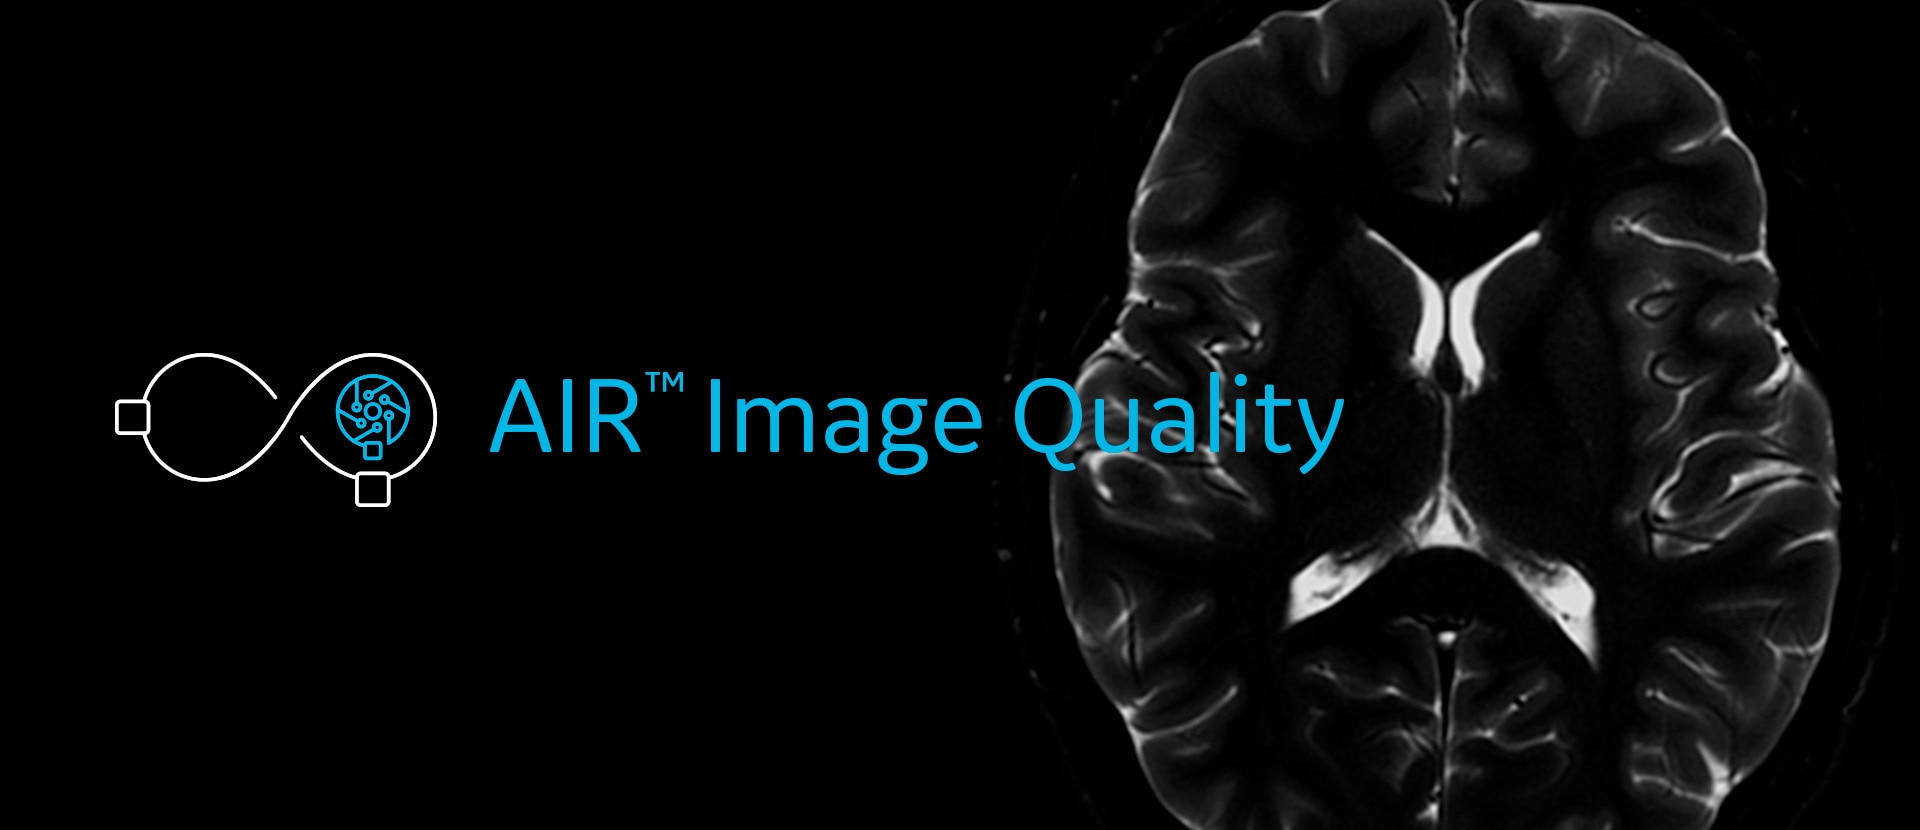 Calidad de imagen en exámenes neurológicos